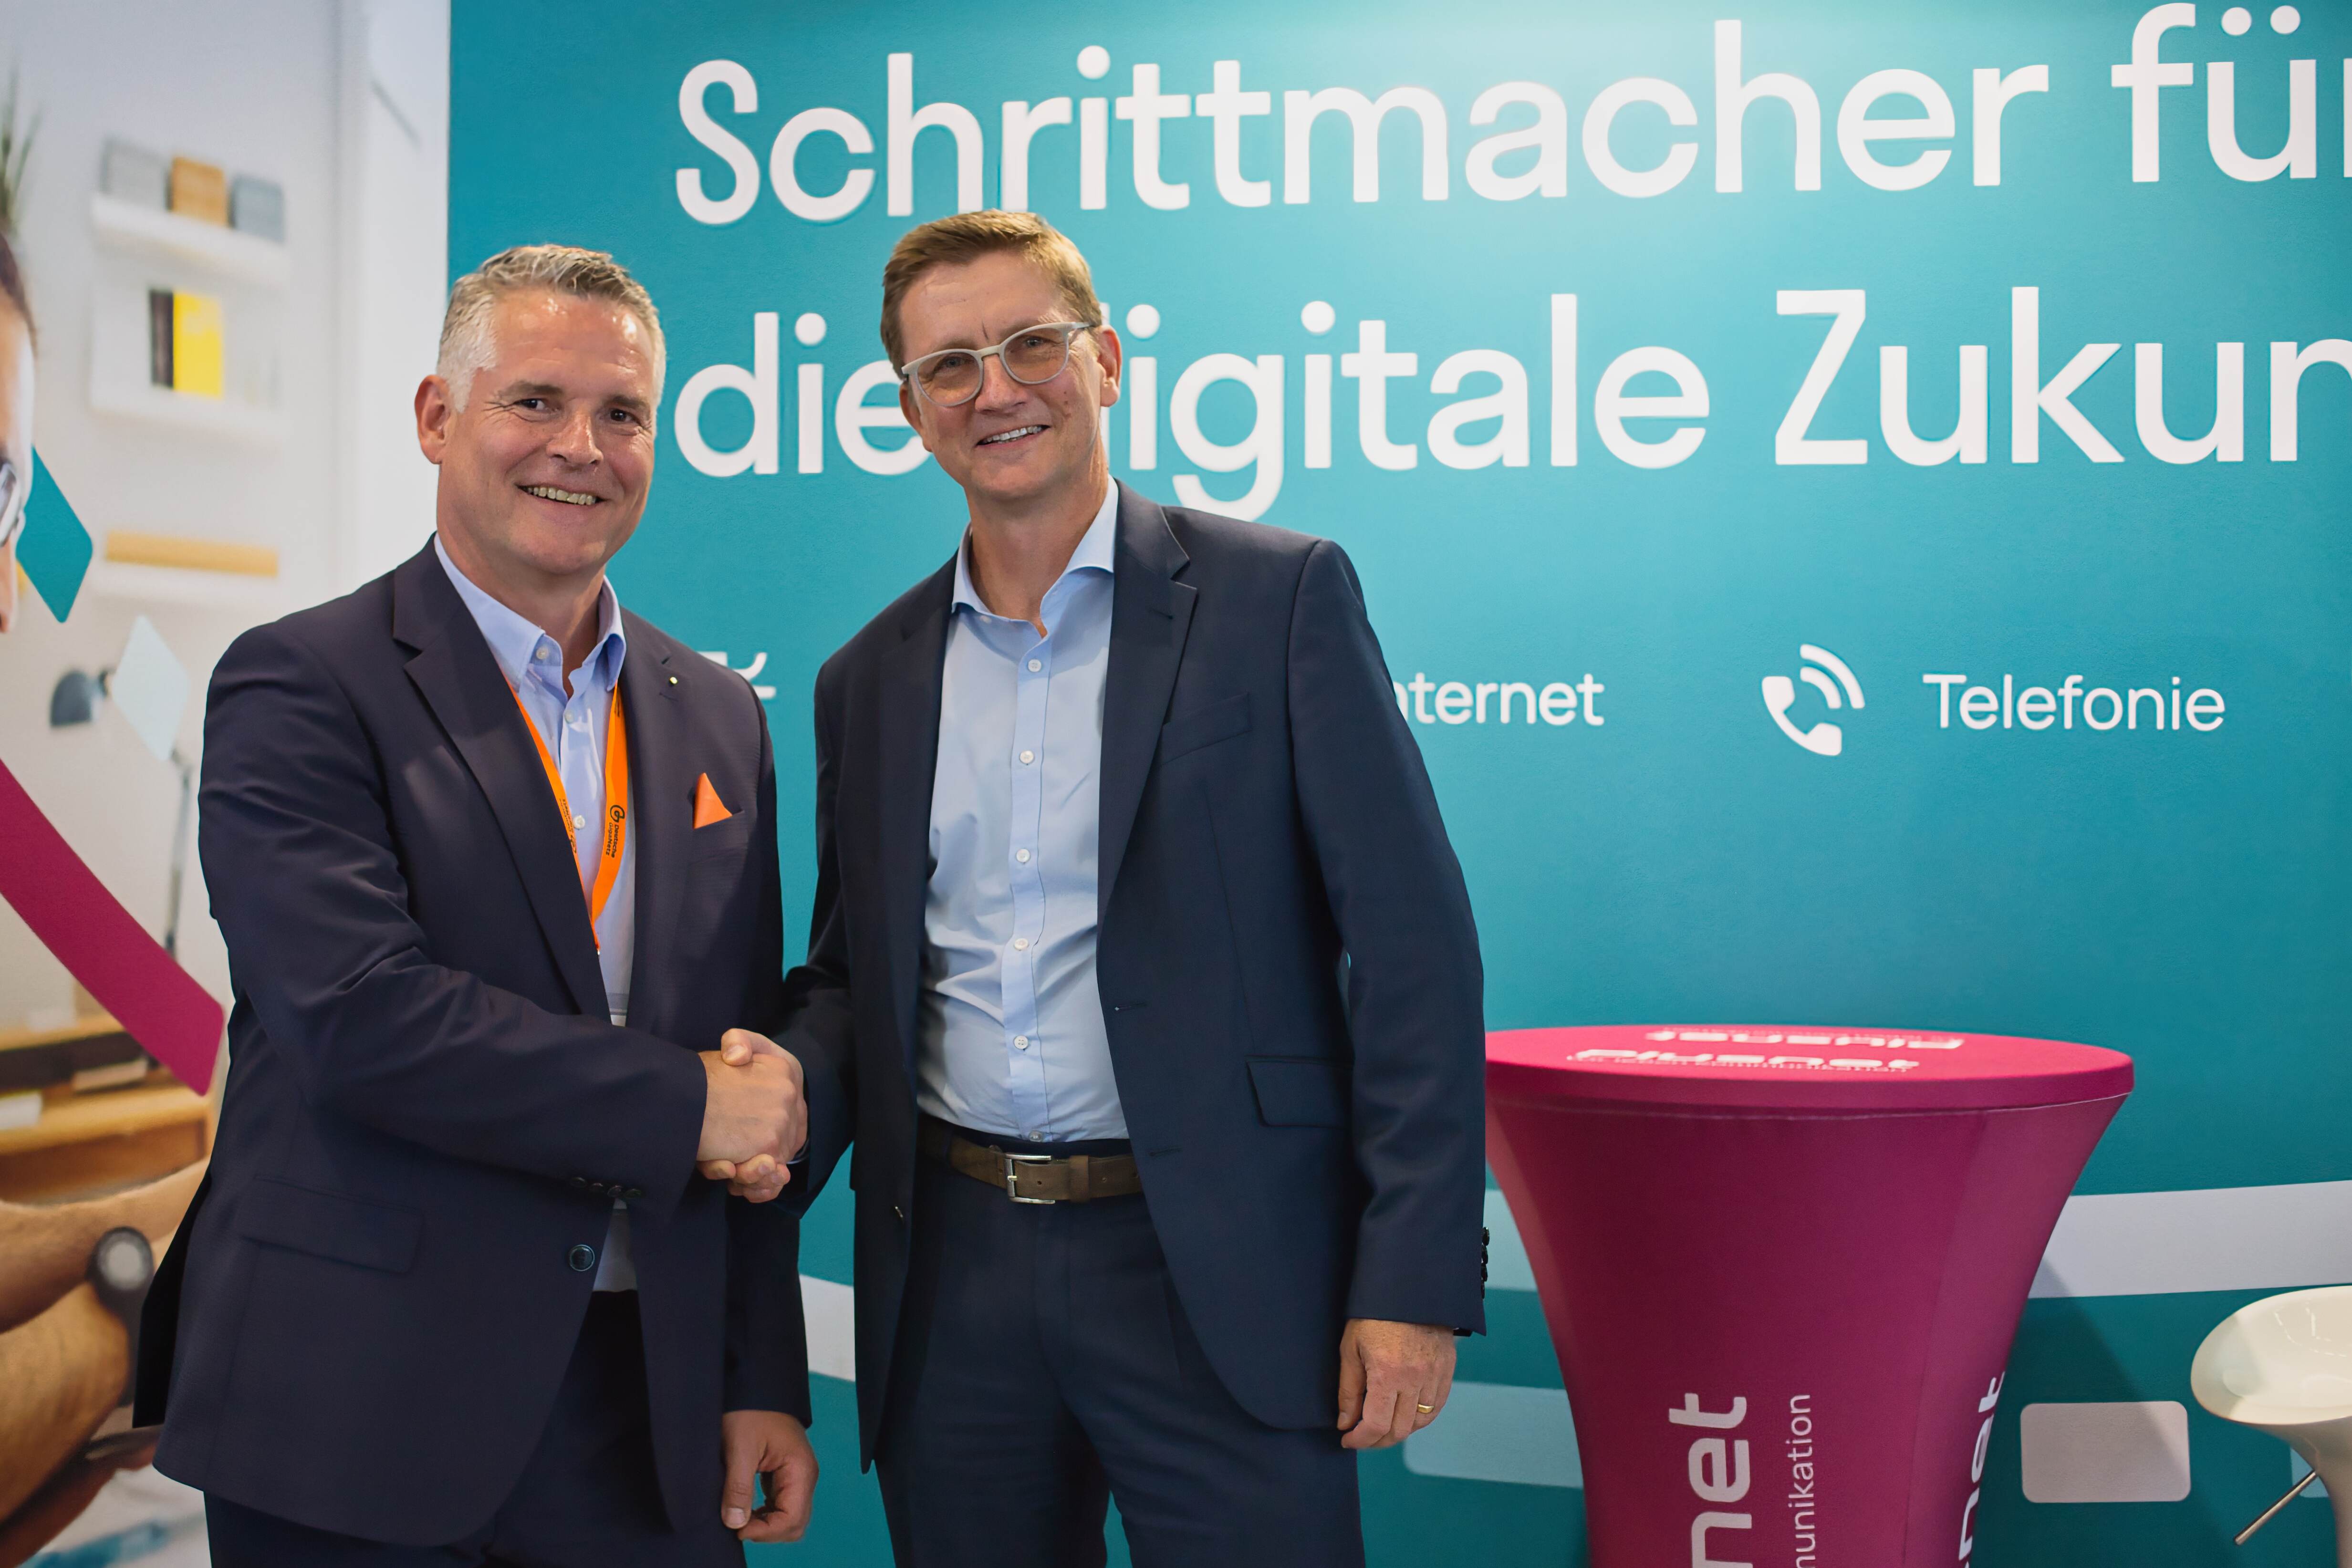 Plusnet kooperiert mit Deutsche GigaNetz GmbH - Handschlag der Geschäftsführer Deutsche GigaNetz Soeren Wendler (l.) und Plusnet Ulrich Hoffmann